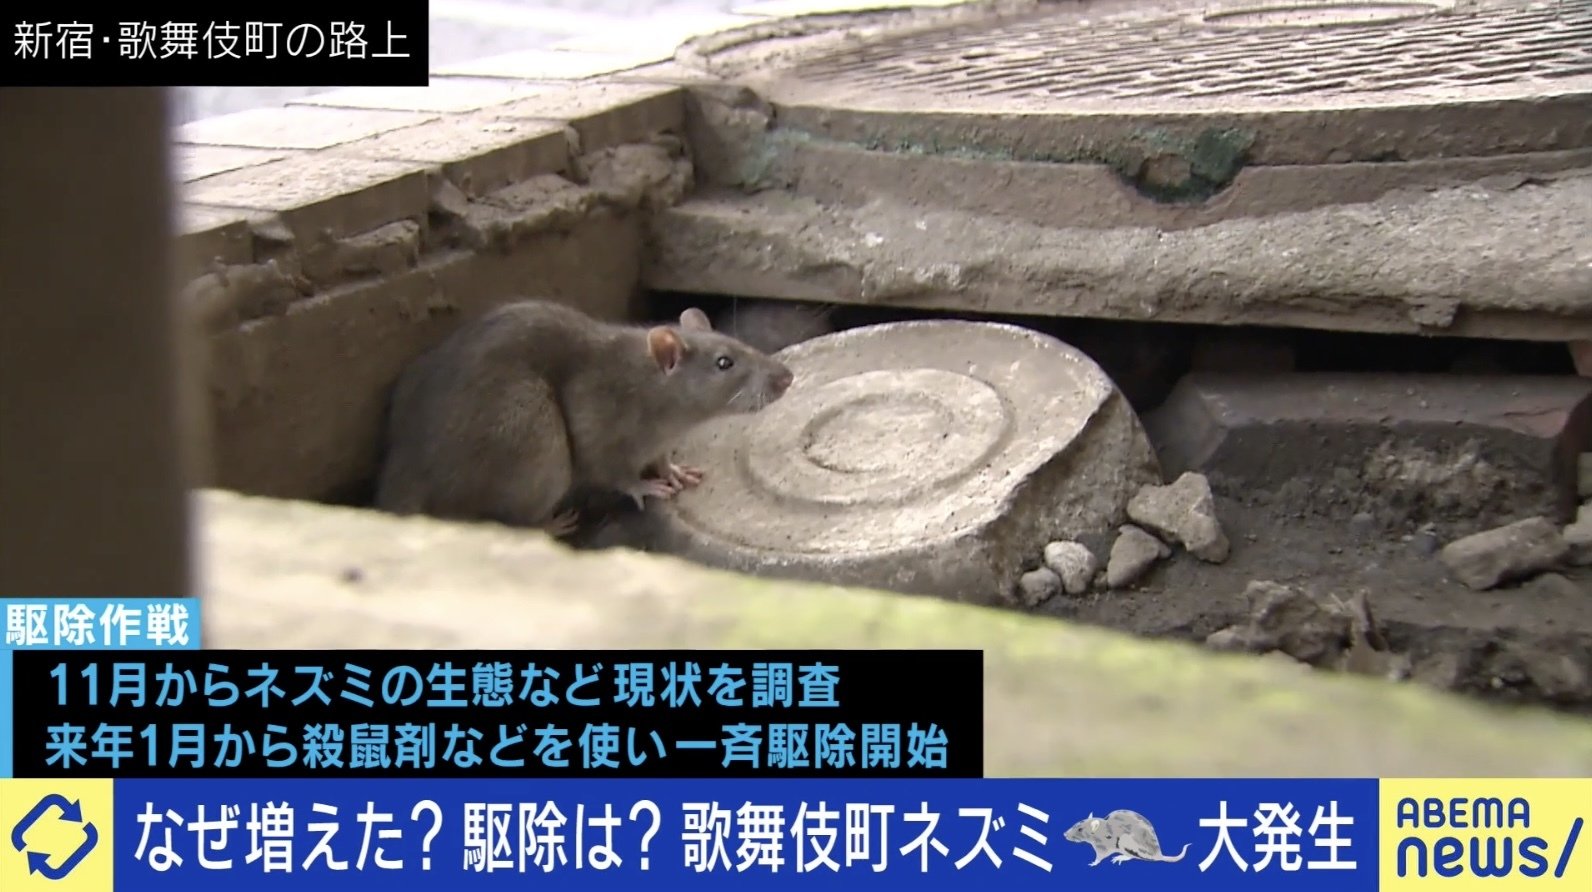 路上飲みを規制すべきとは思わない」 新宿区が歌舞伎町のネズミ駆除へ